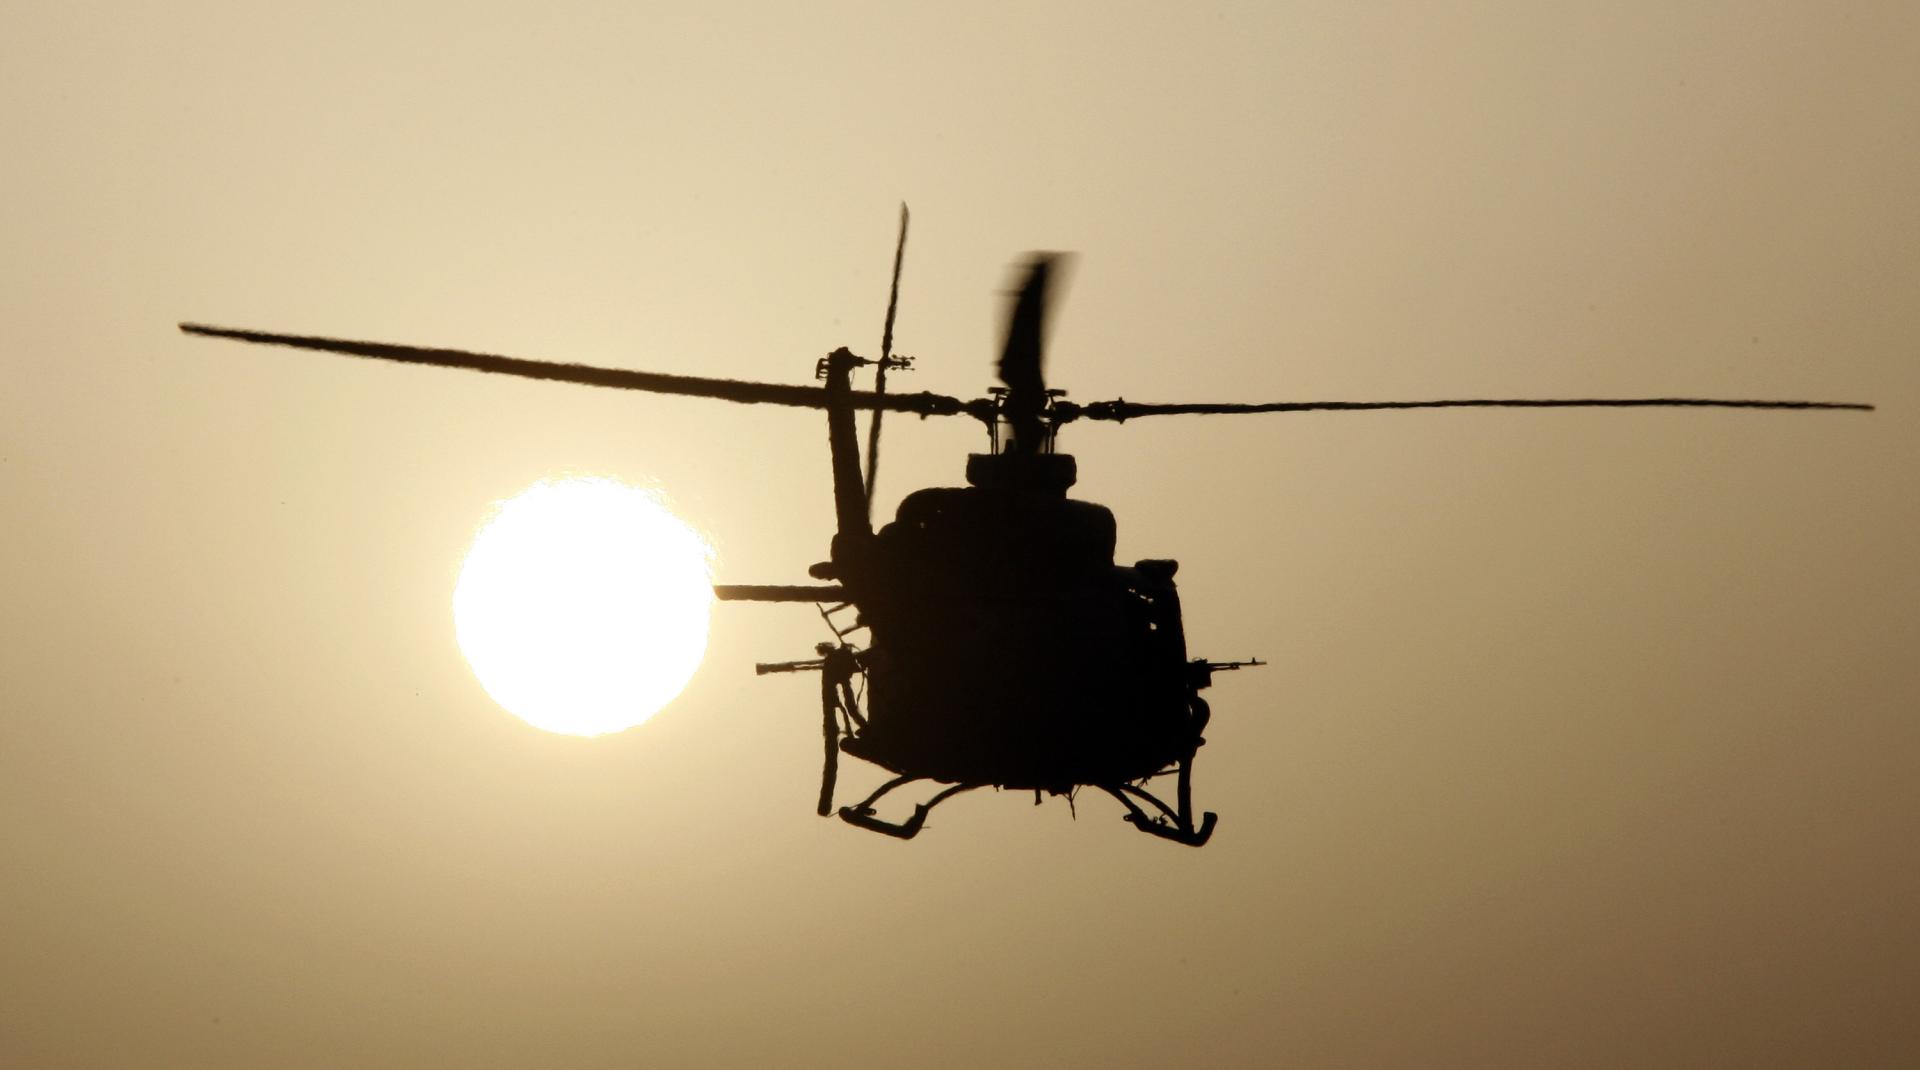 Οι ΗΠΑ μεταφέρουν στρατιωτικά ελικόπτερα στην Αλεξανδρούπολη για την άσκηση Defender Europe 2021